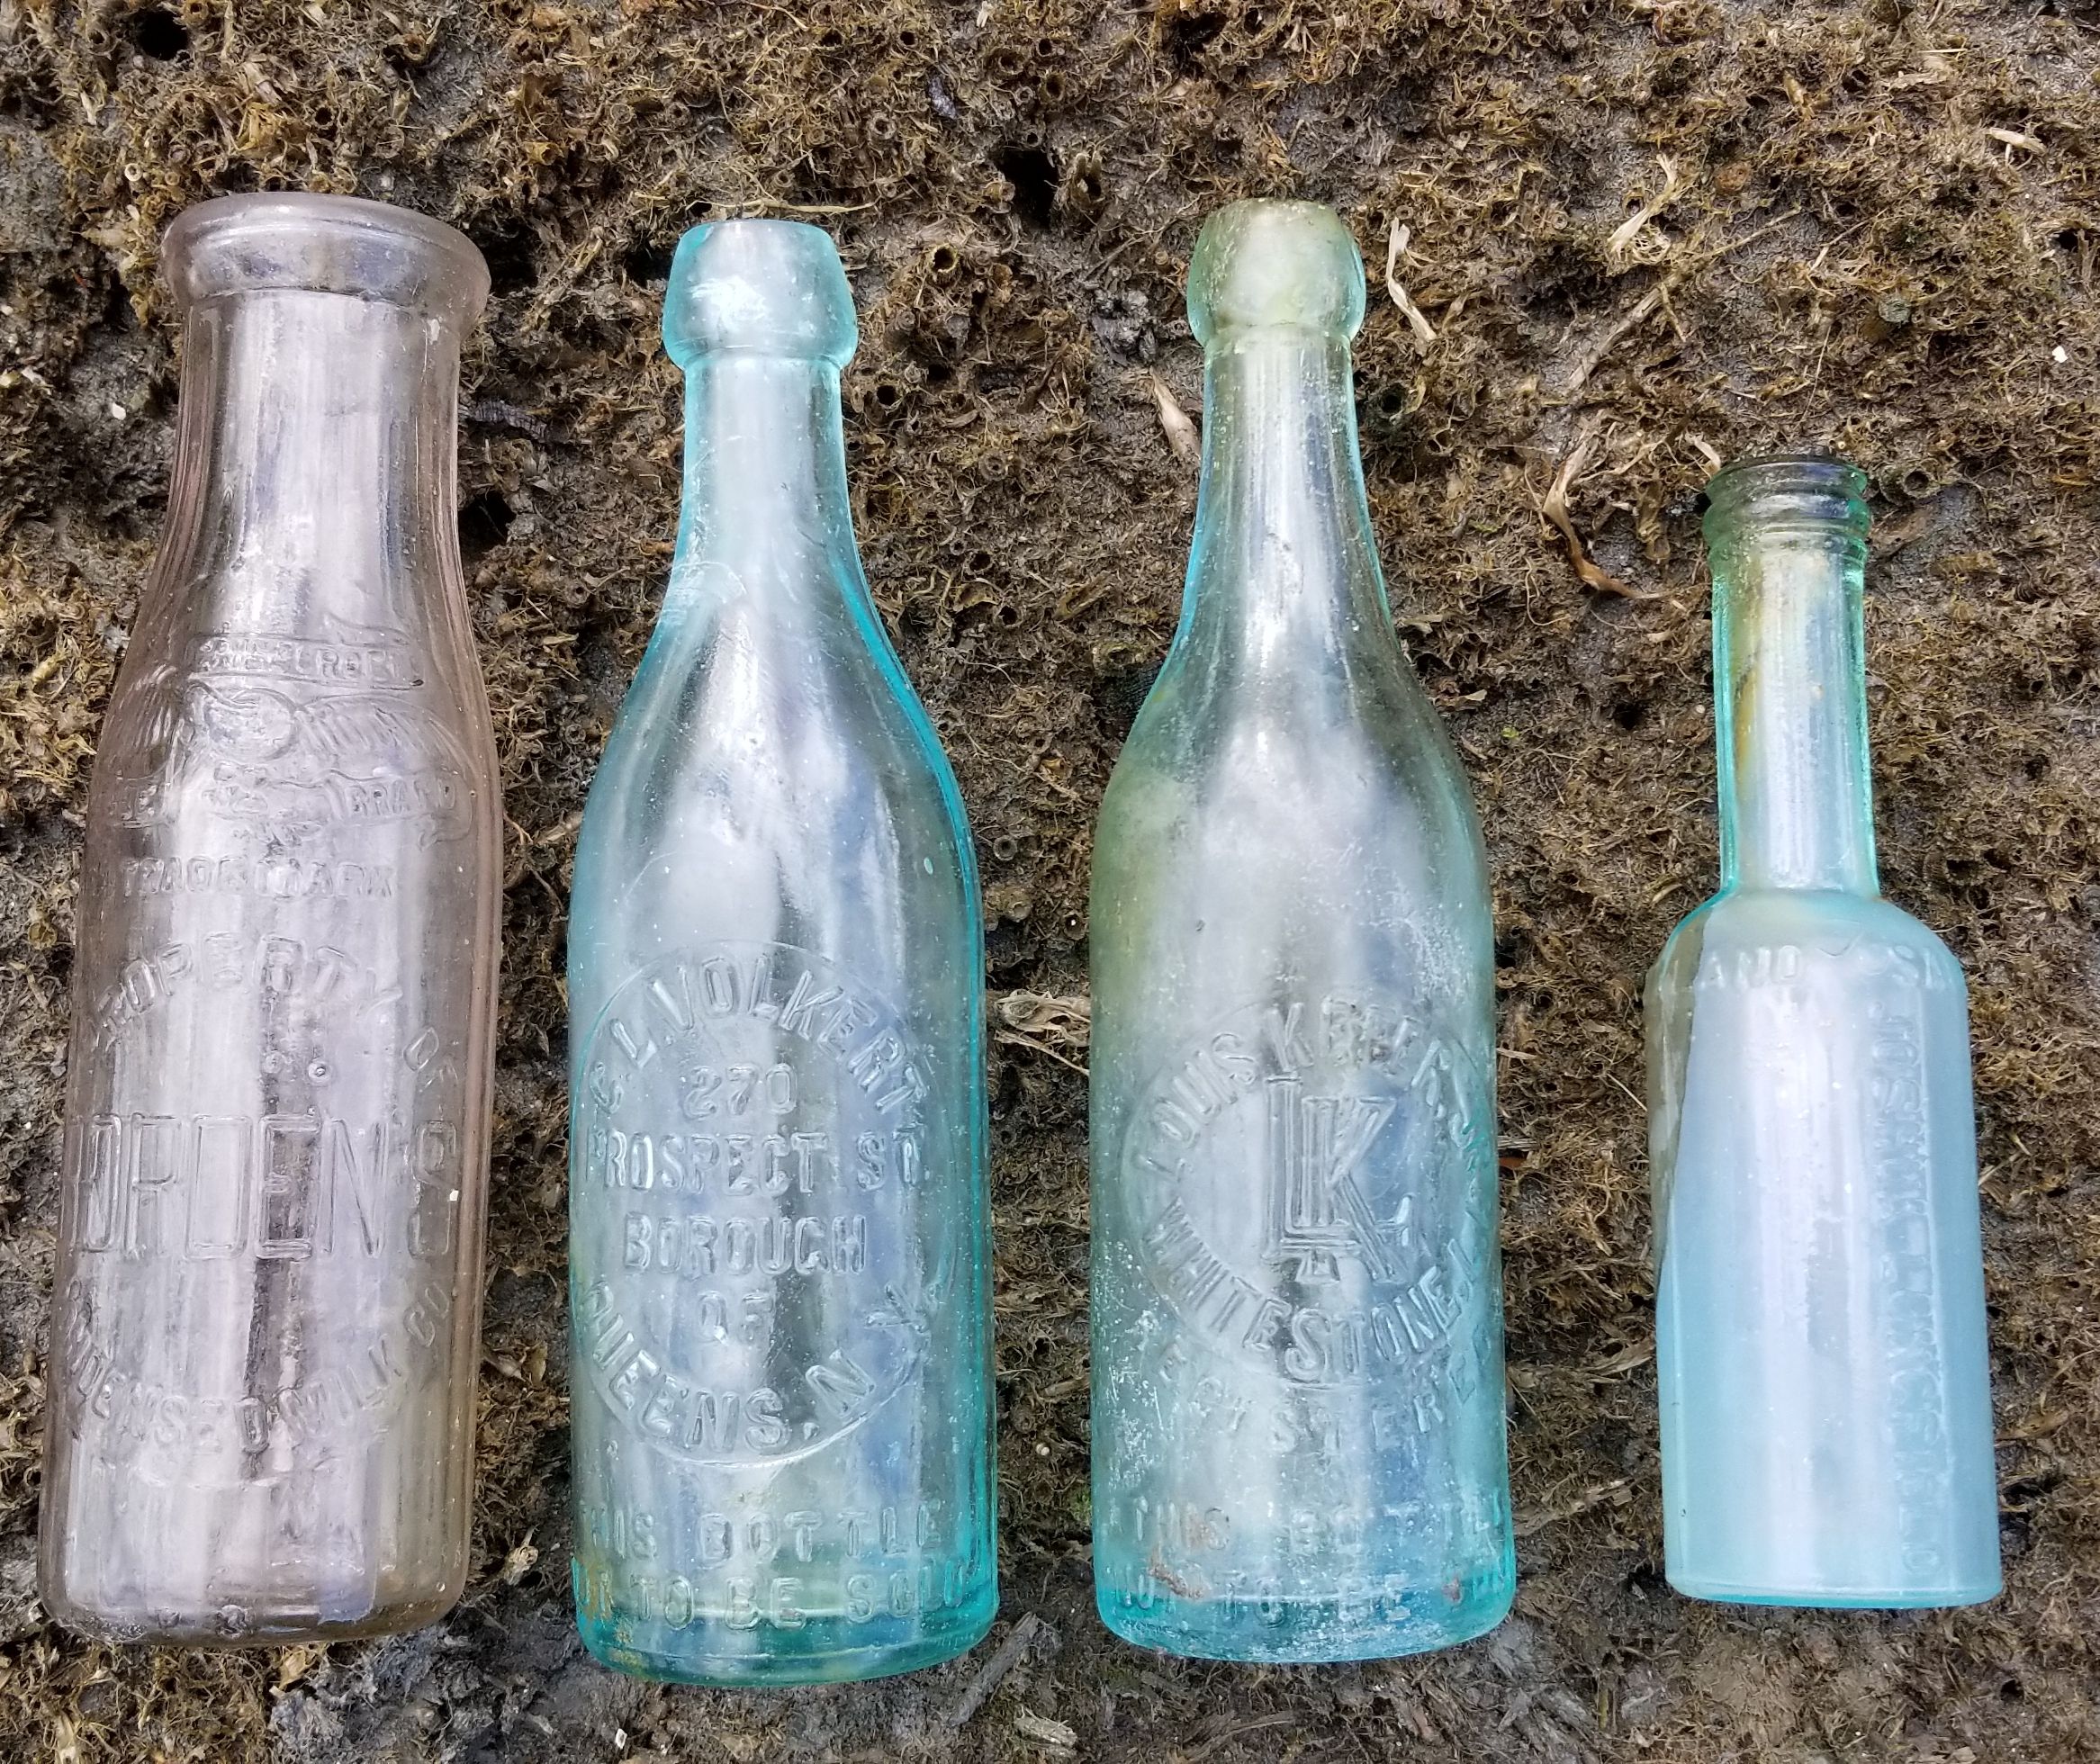 Bottles of 6/9/2022